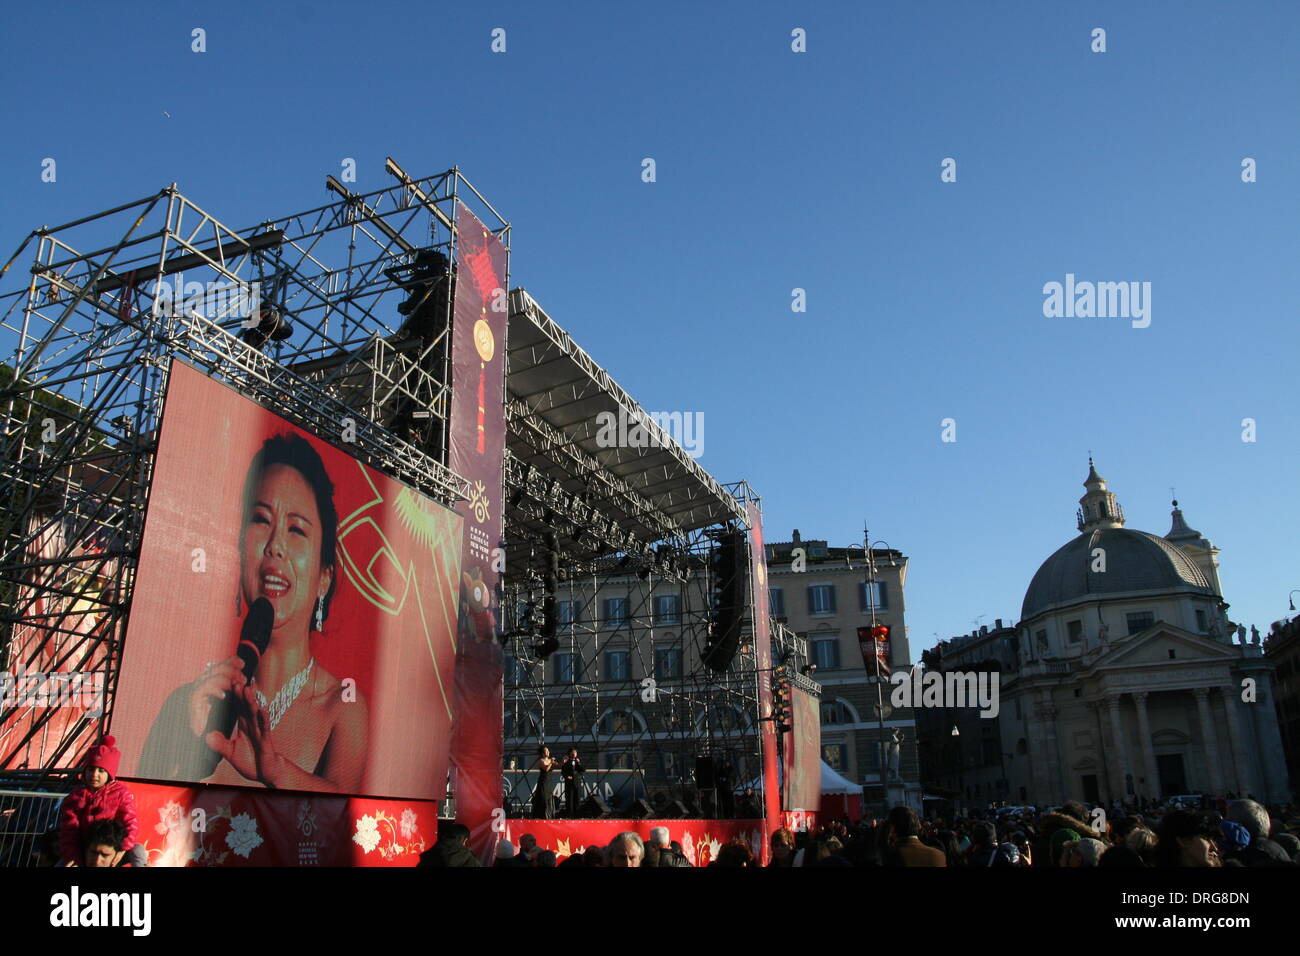 Rome, Italie. 25 Jan 2014 célébrations du Nouvel An chinois sur la Piazza del Popolo à Rome Italie Crédit : Gari Wyn Williams/Alamy Live News Banque D'Images